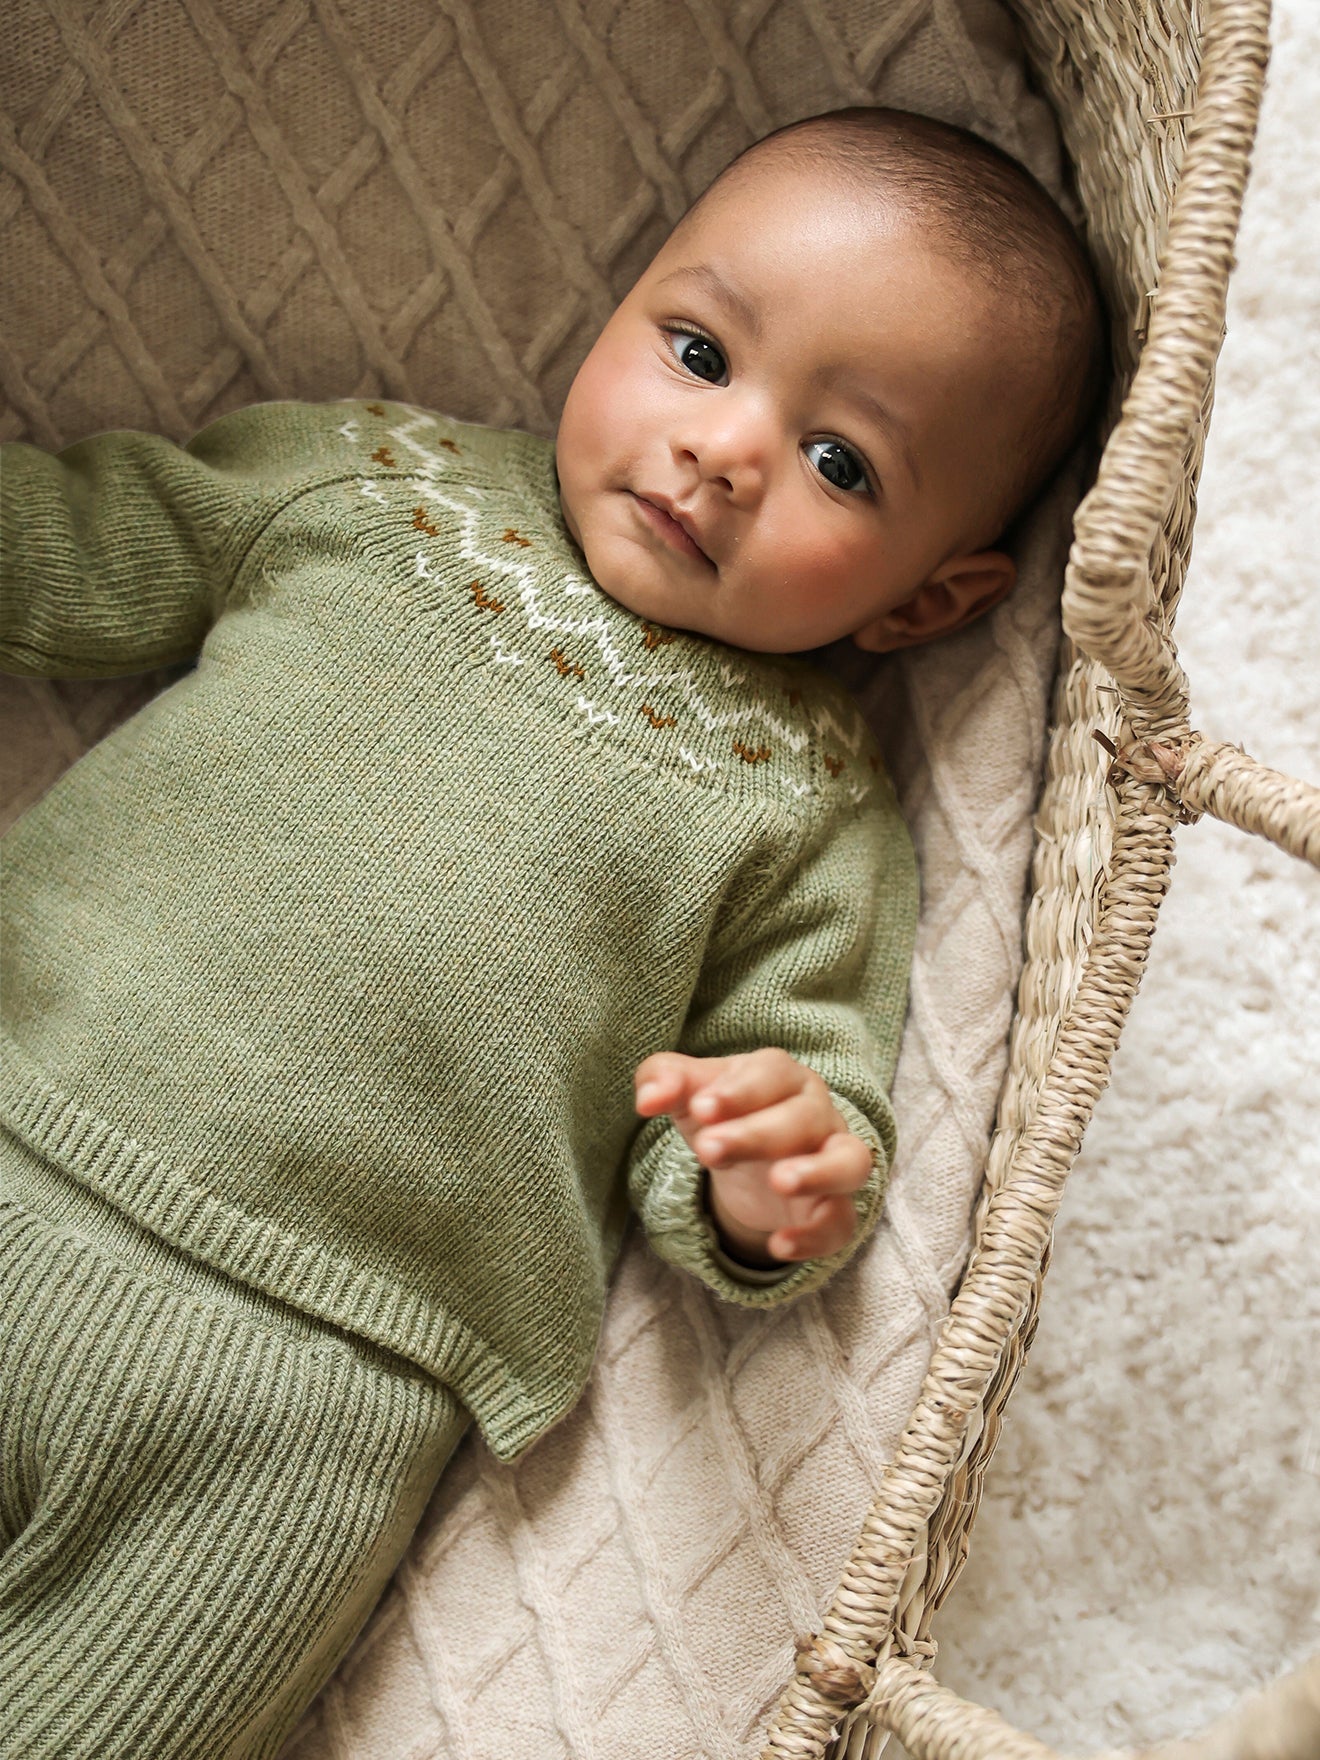 Brassière bébé naissance en tricot de coton bio - gris clair chine